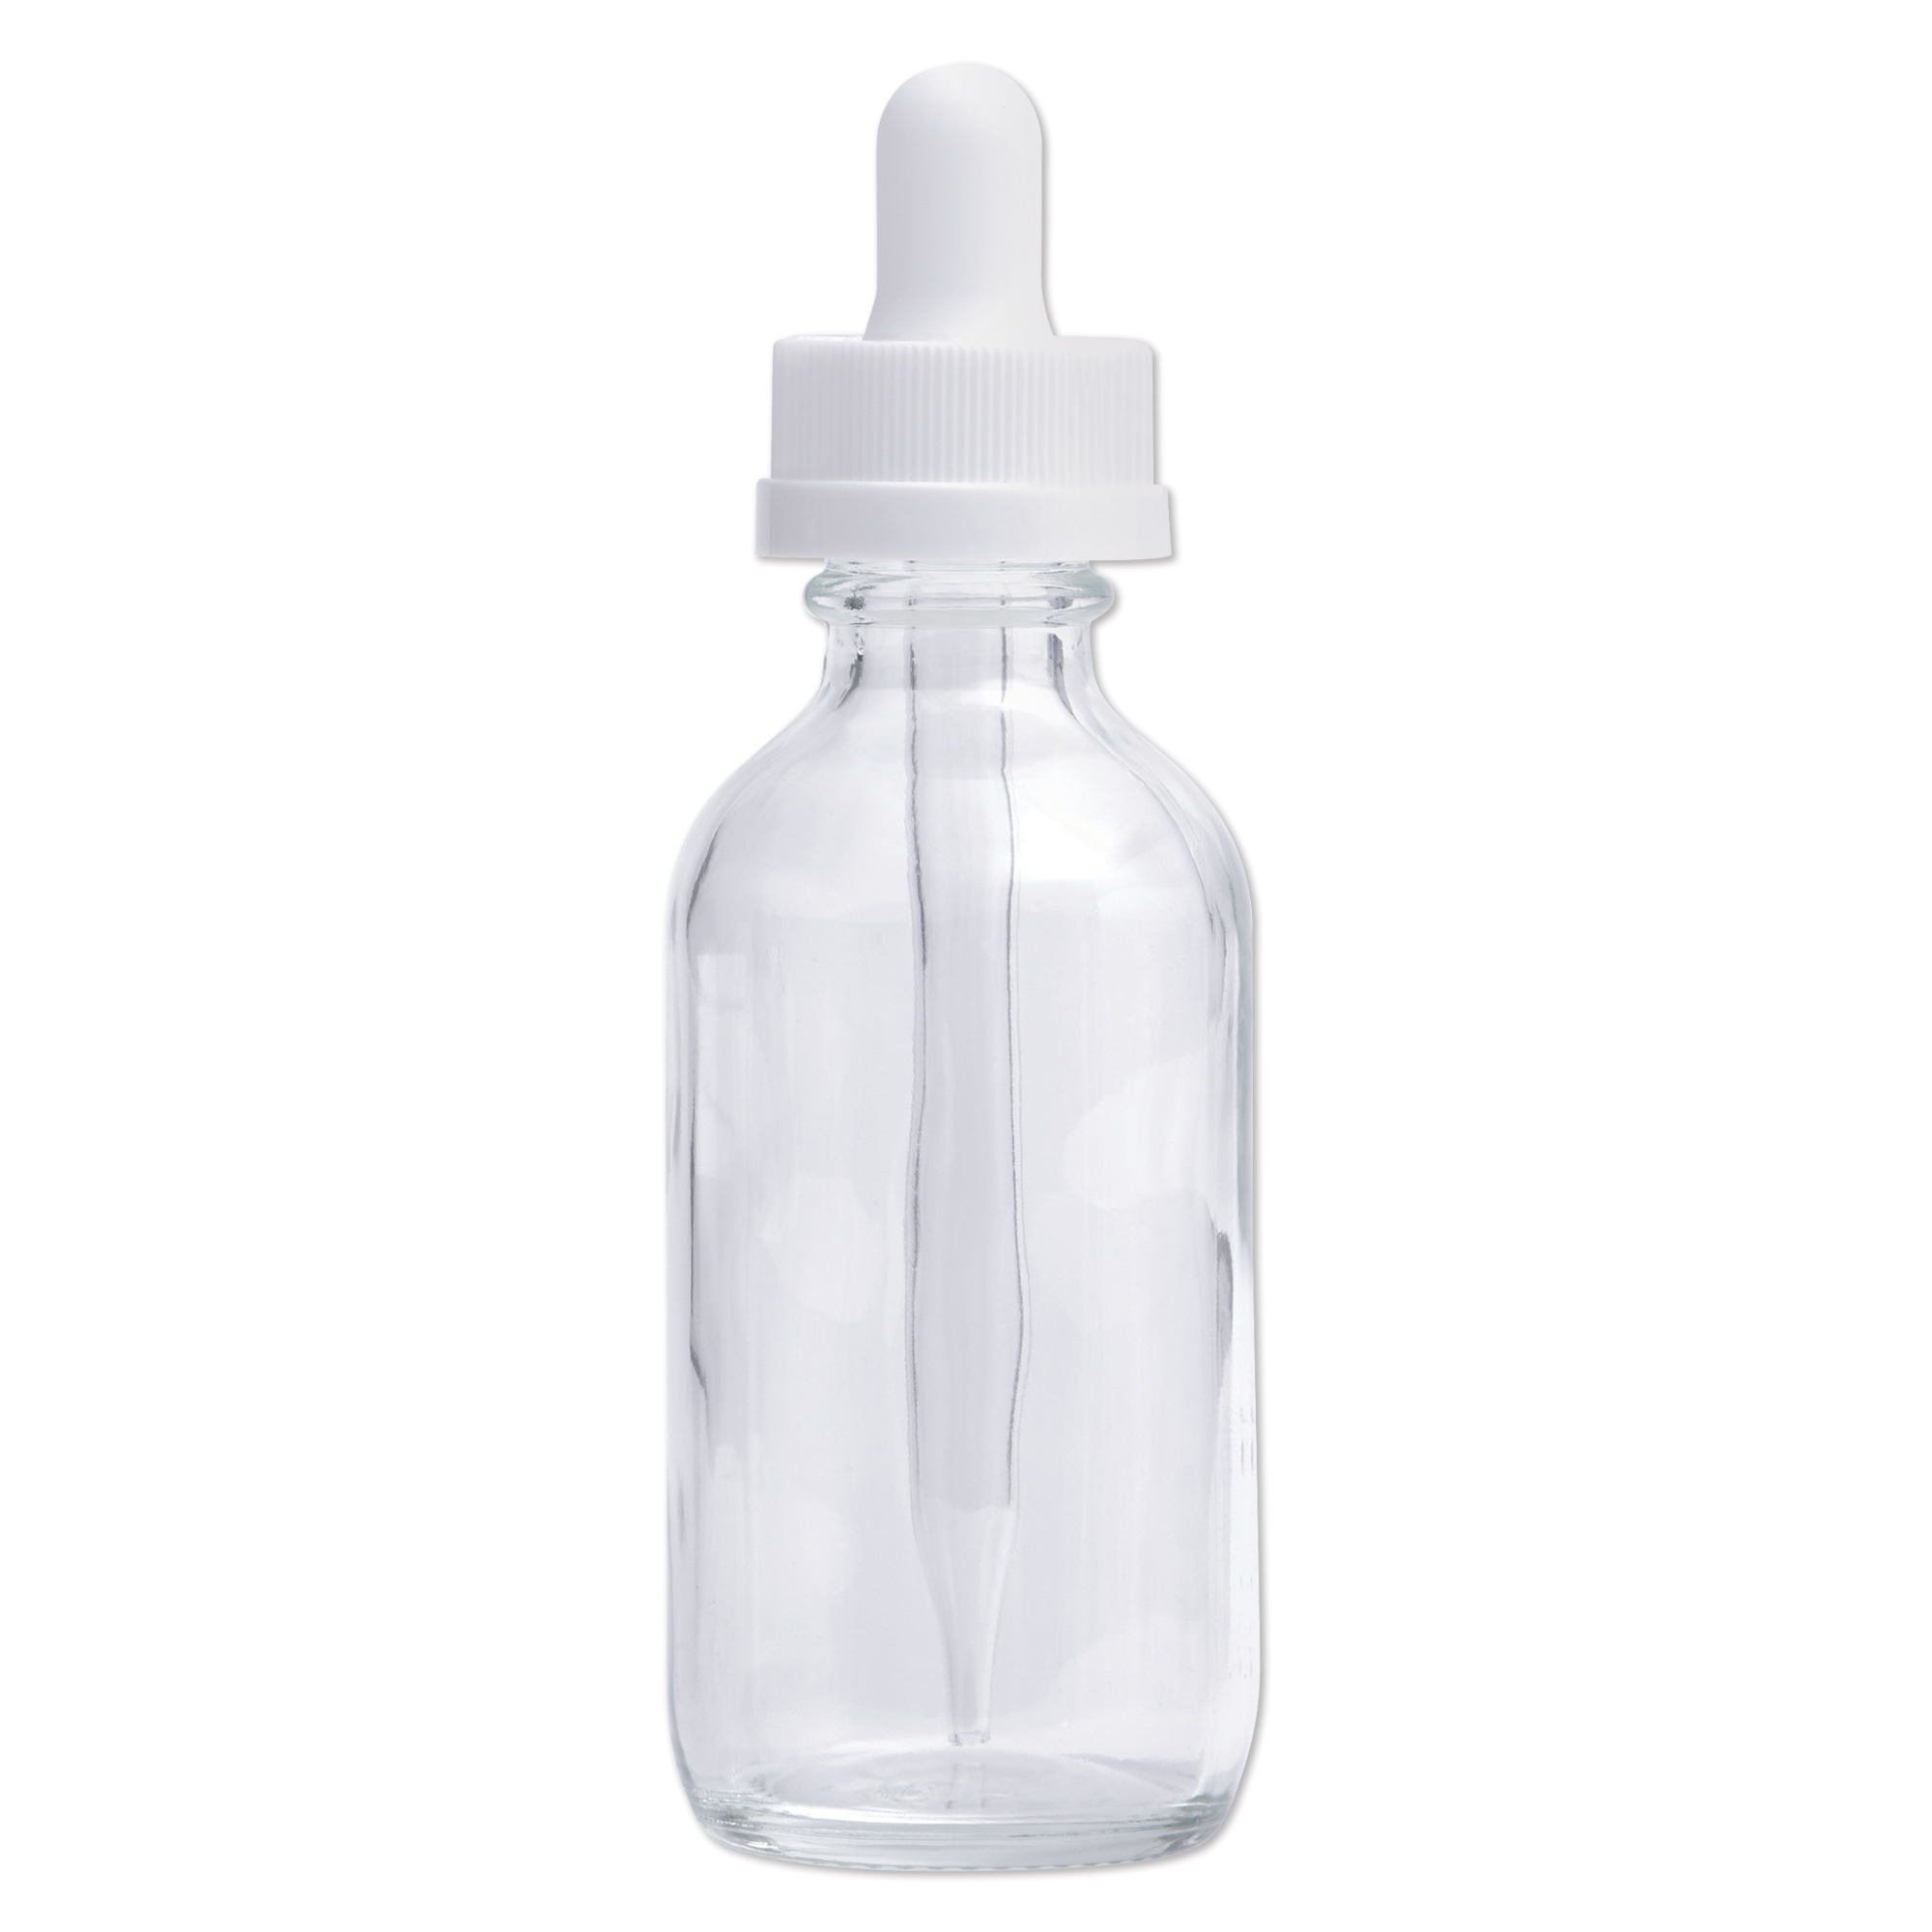 Glass Dropper Bottle, 2 oz.